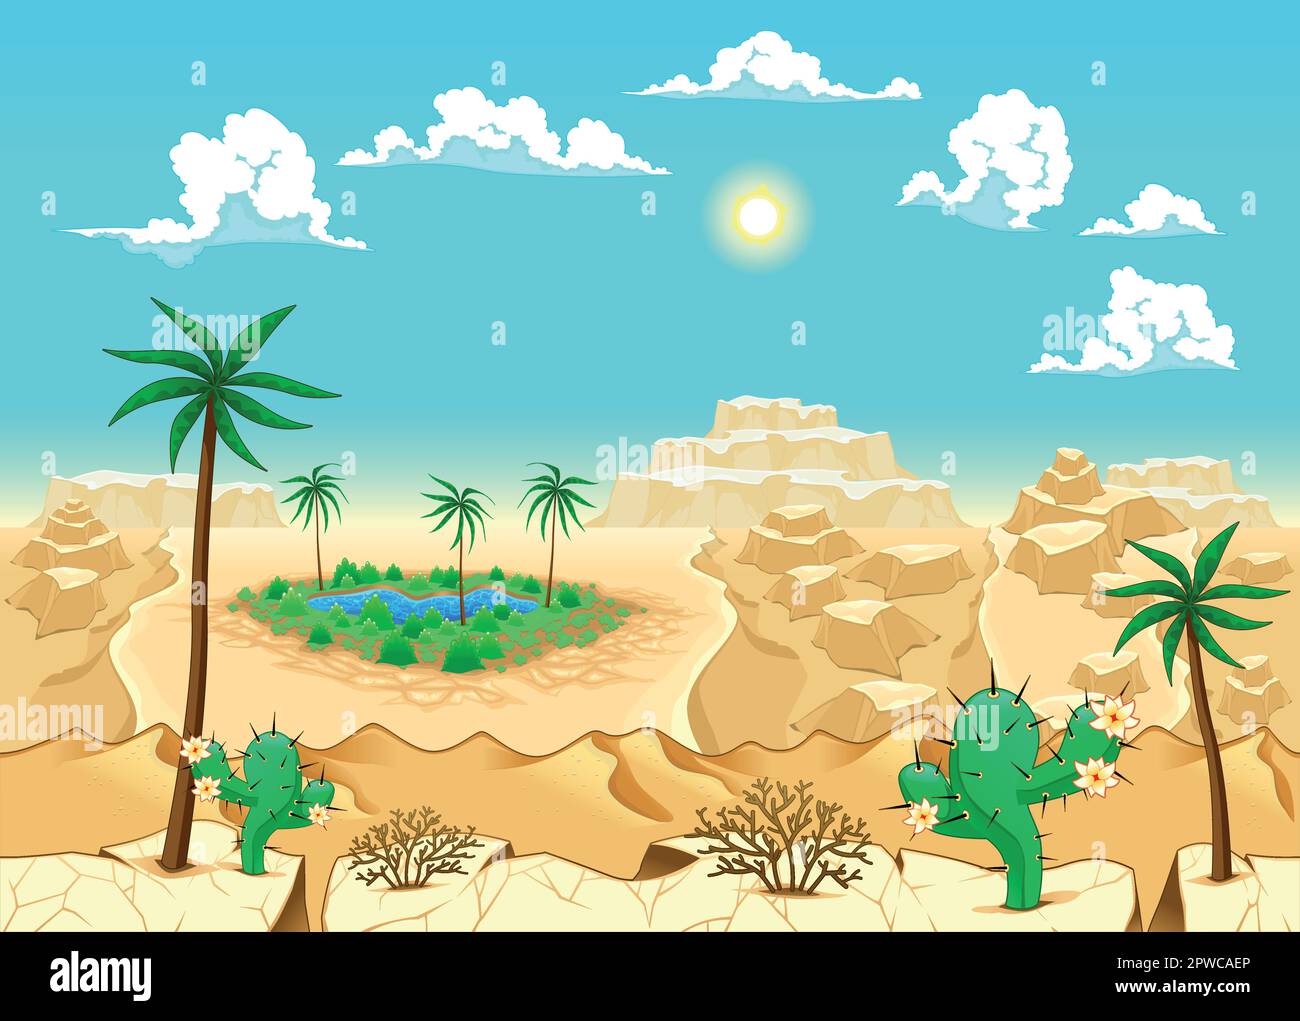 Deserto con oasi. Illustrazione vettoriale. I lati si ripetono senza interruzioni per una possibile animazione continua. Illustrazione Vettoriale